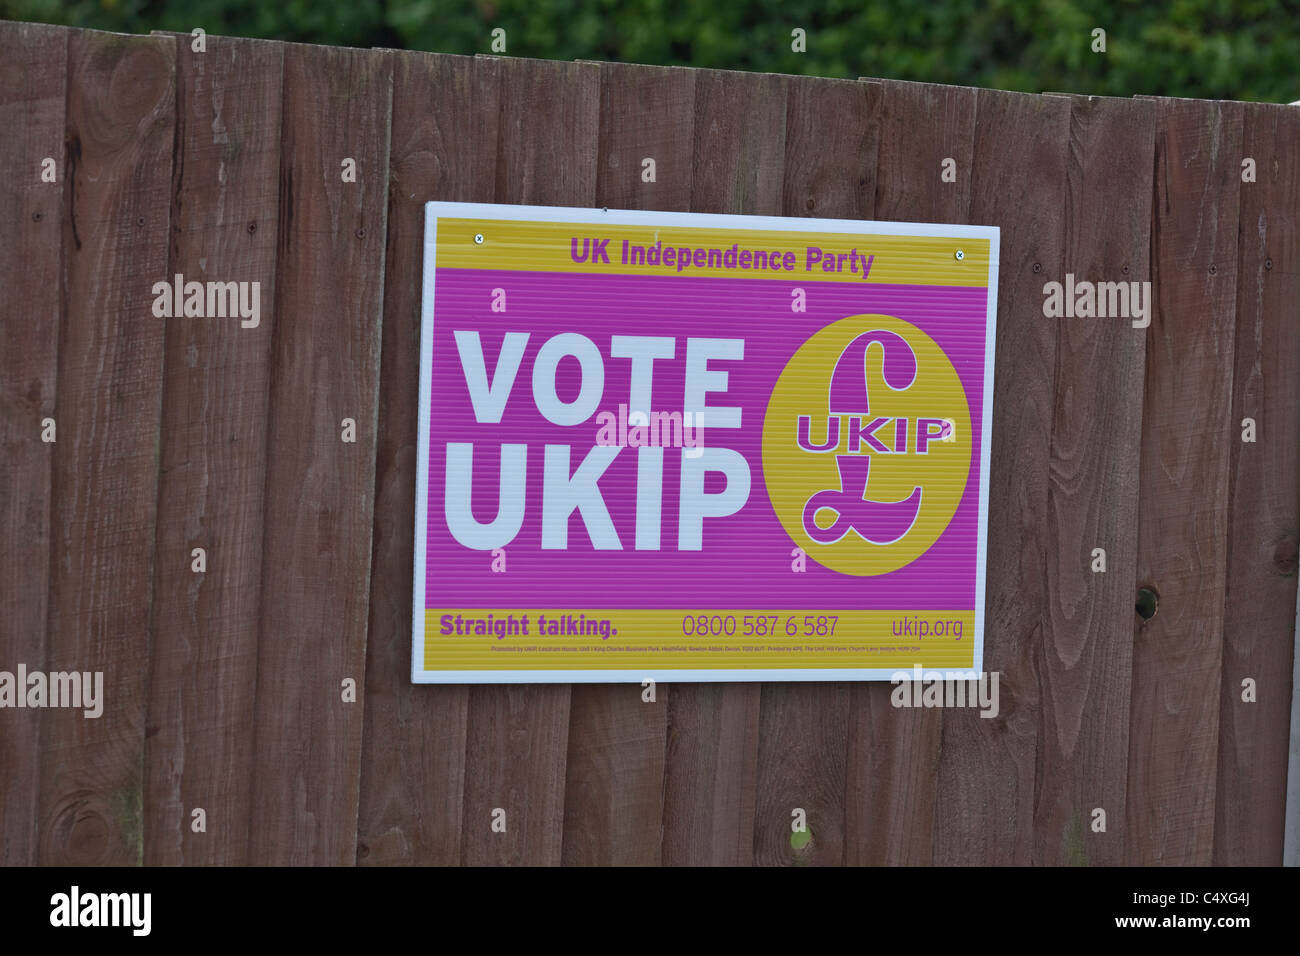 Póster de promoción electoral; por partido político UKIP. Fiesta de Independencia del Reino Unido. 2011. Suburban valla. North Walsham Foto de stock